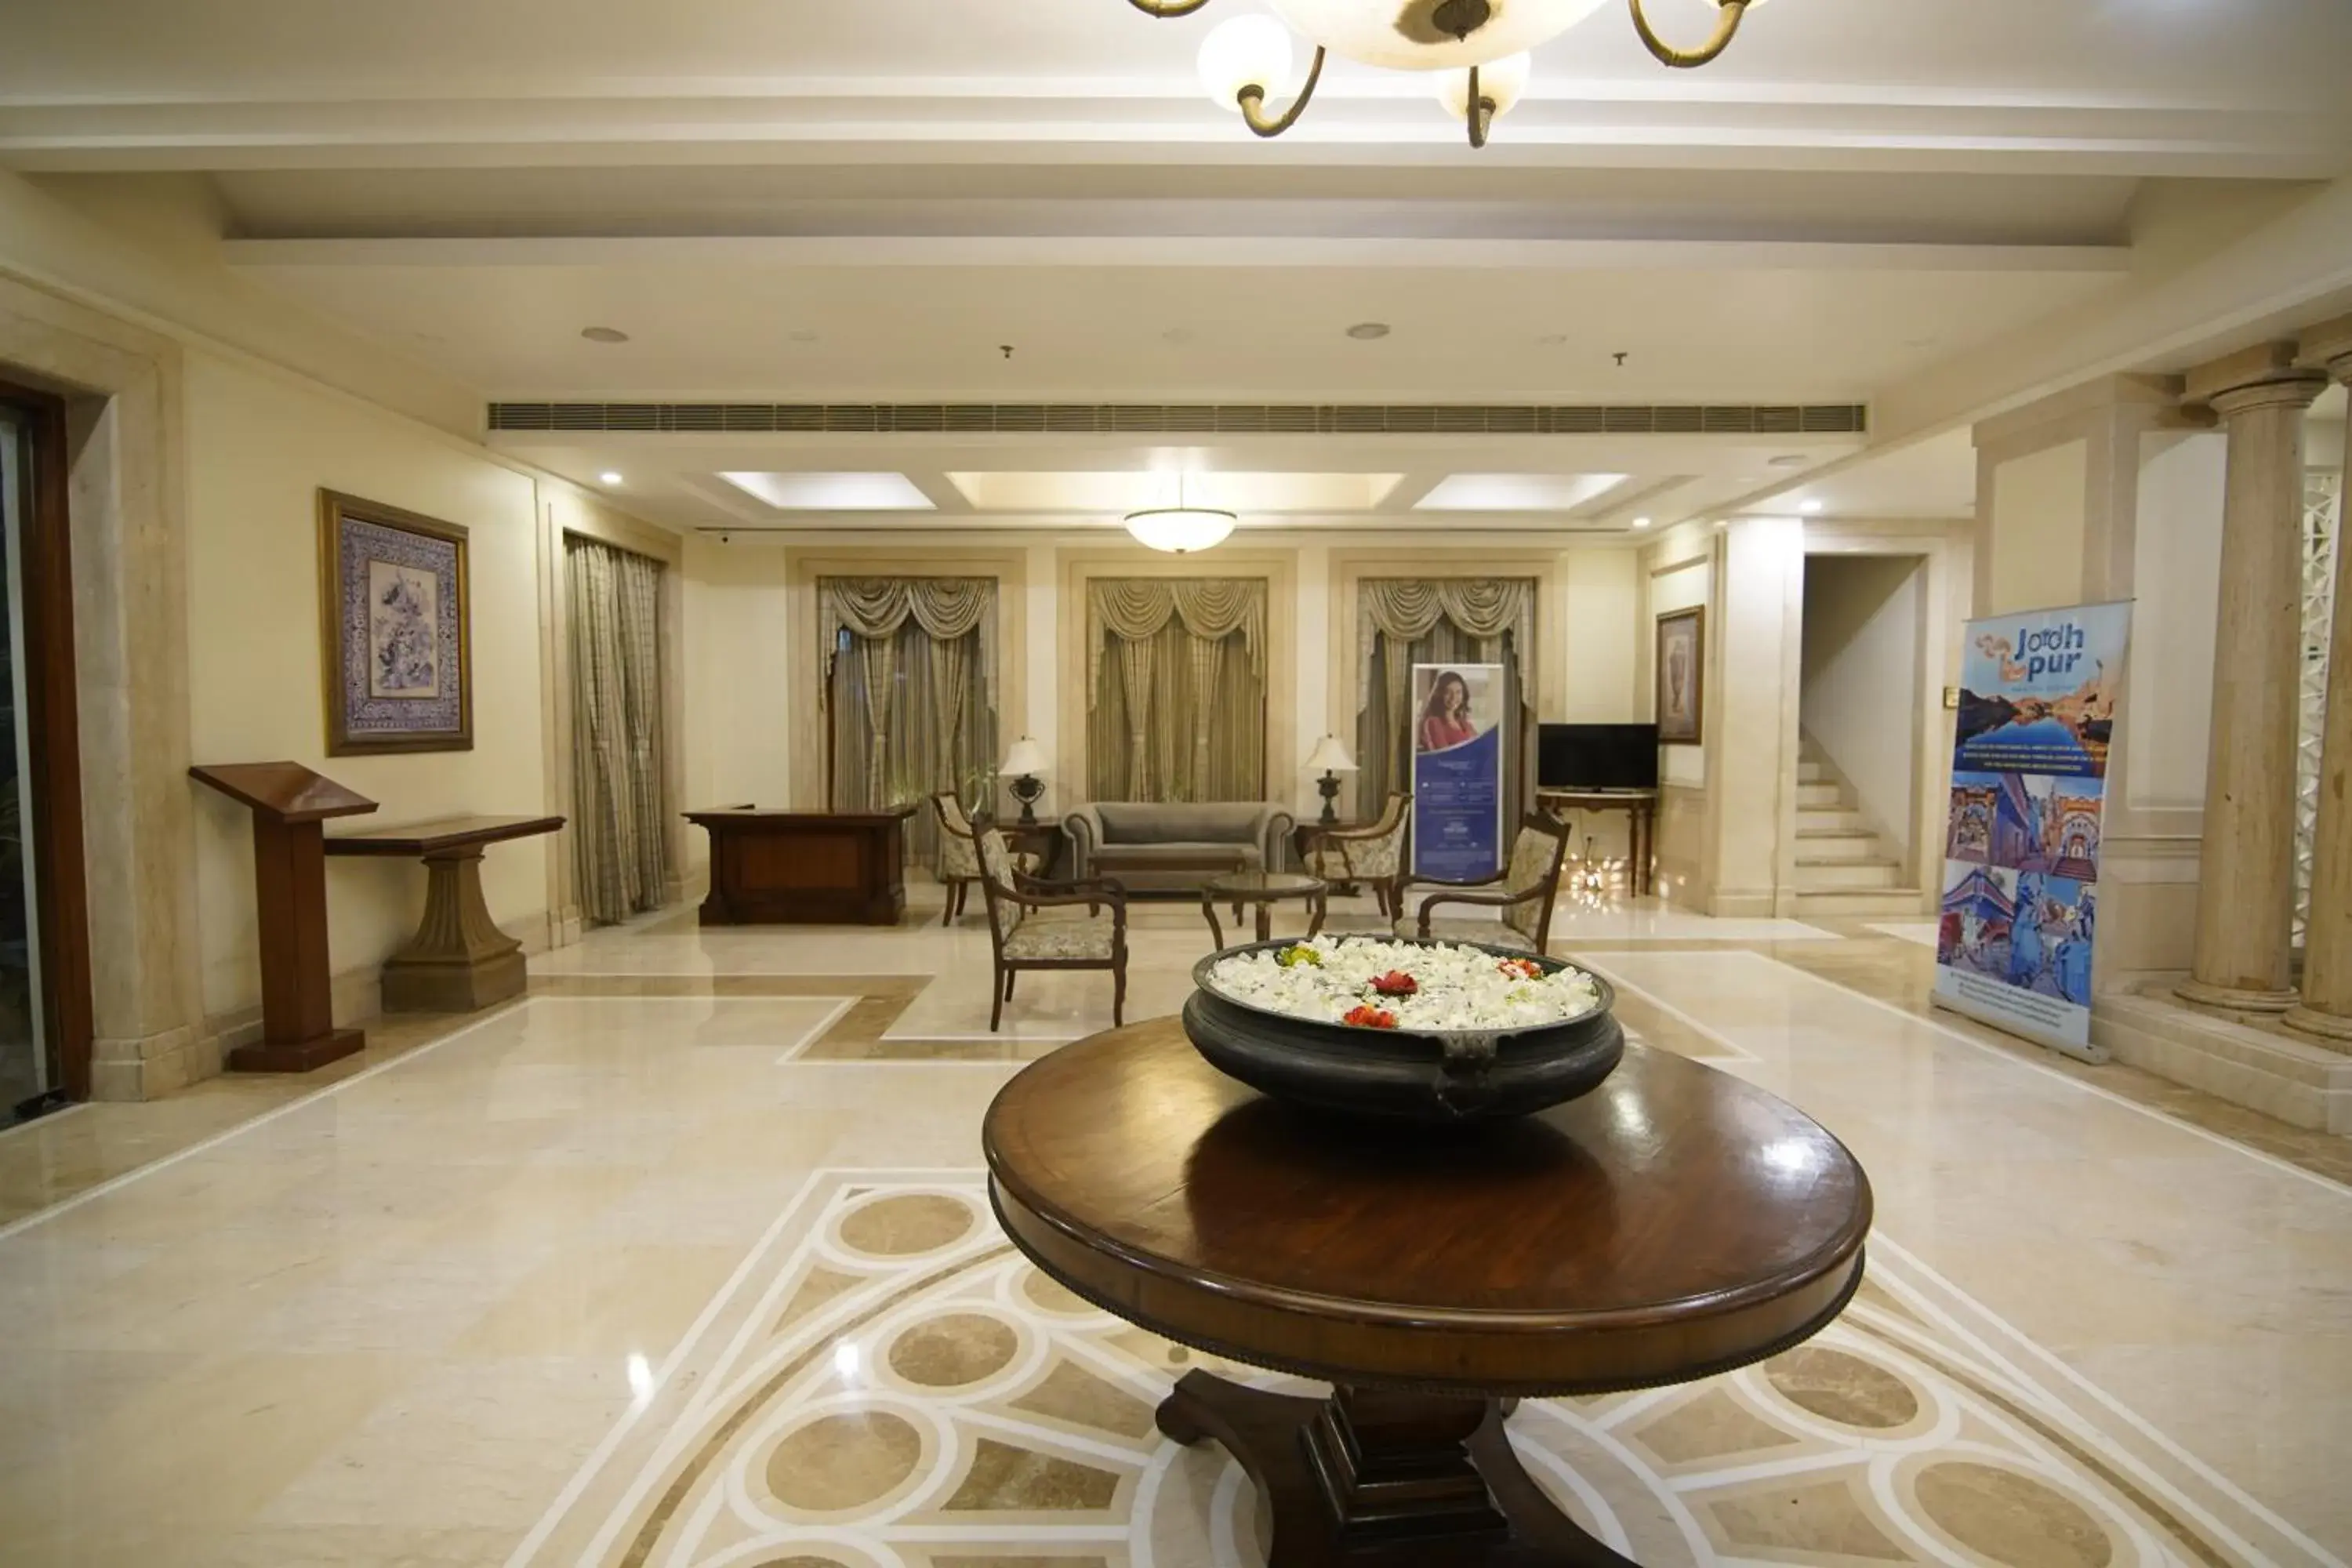 Lobby or reception, Lobby/Reception in Park Plaza Jodhpur